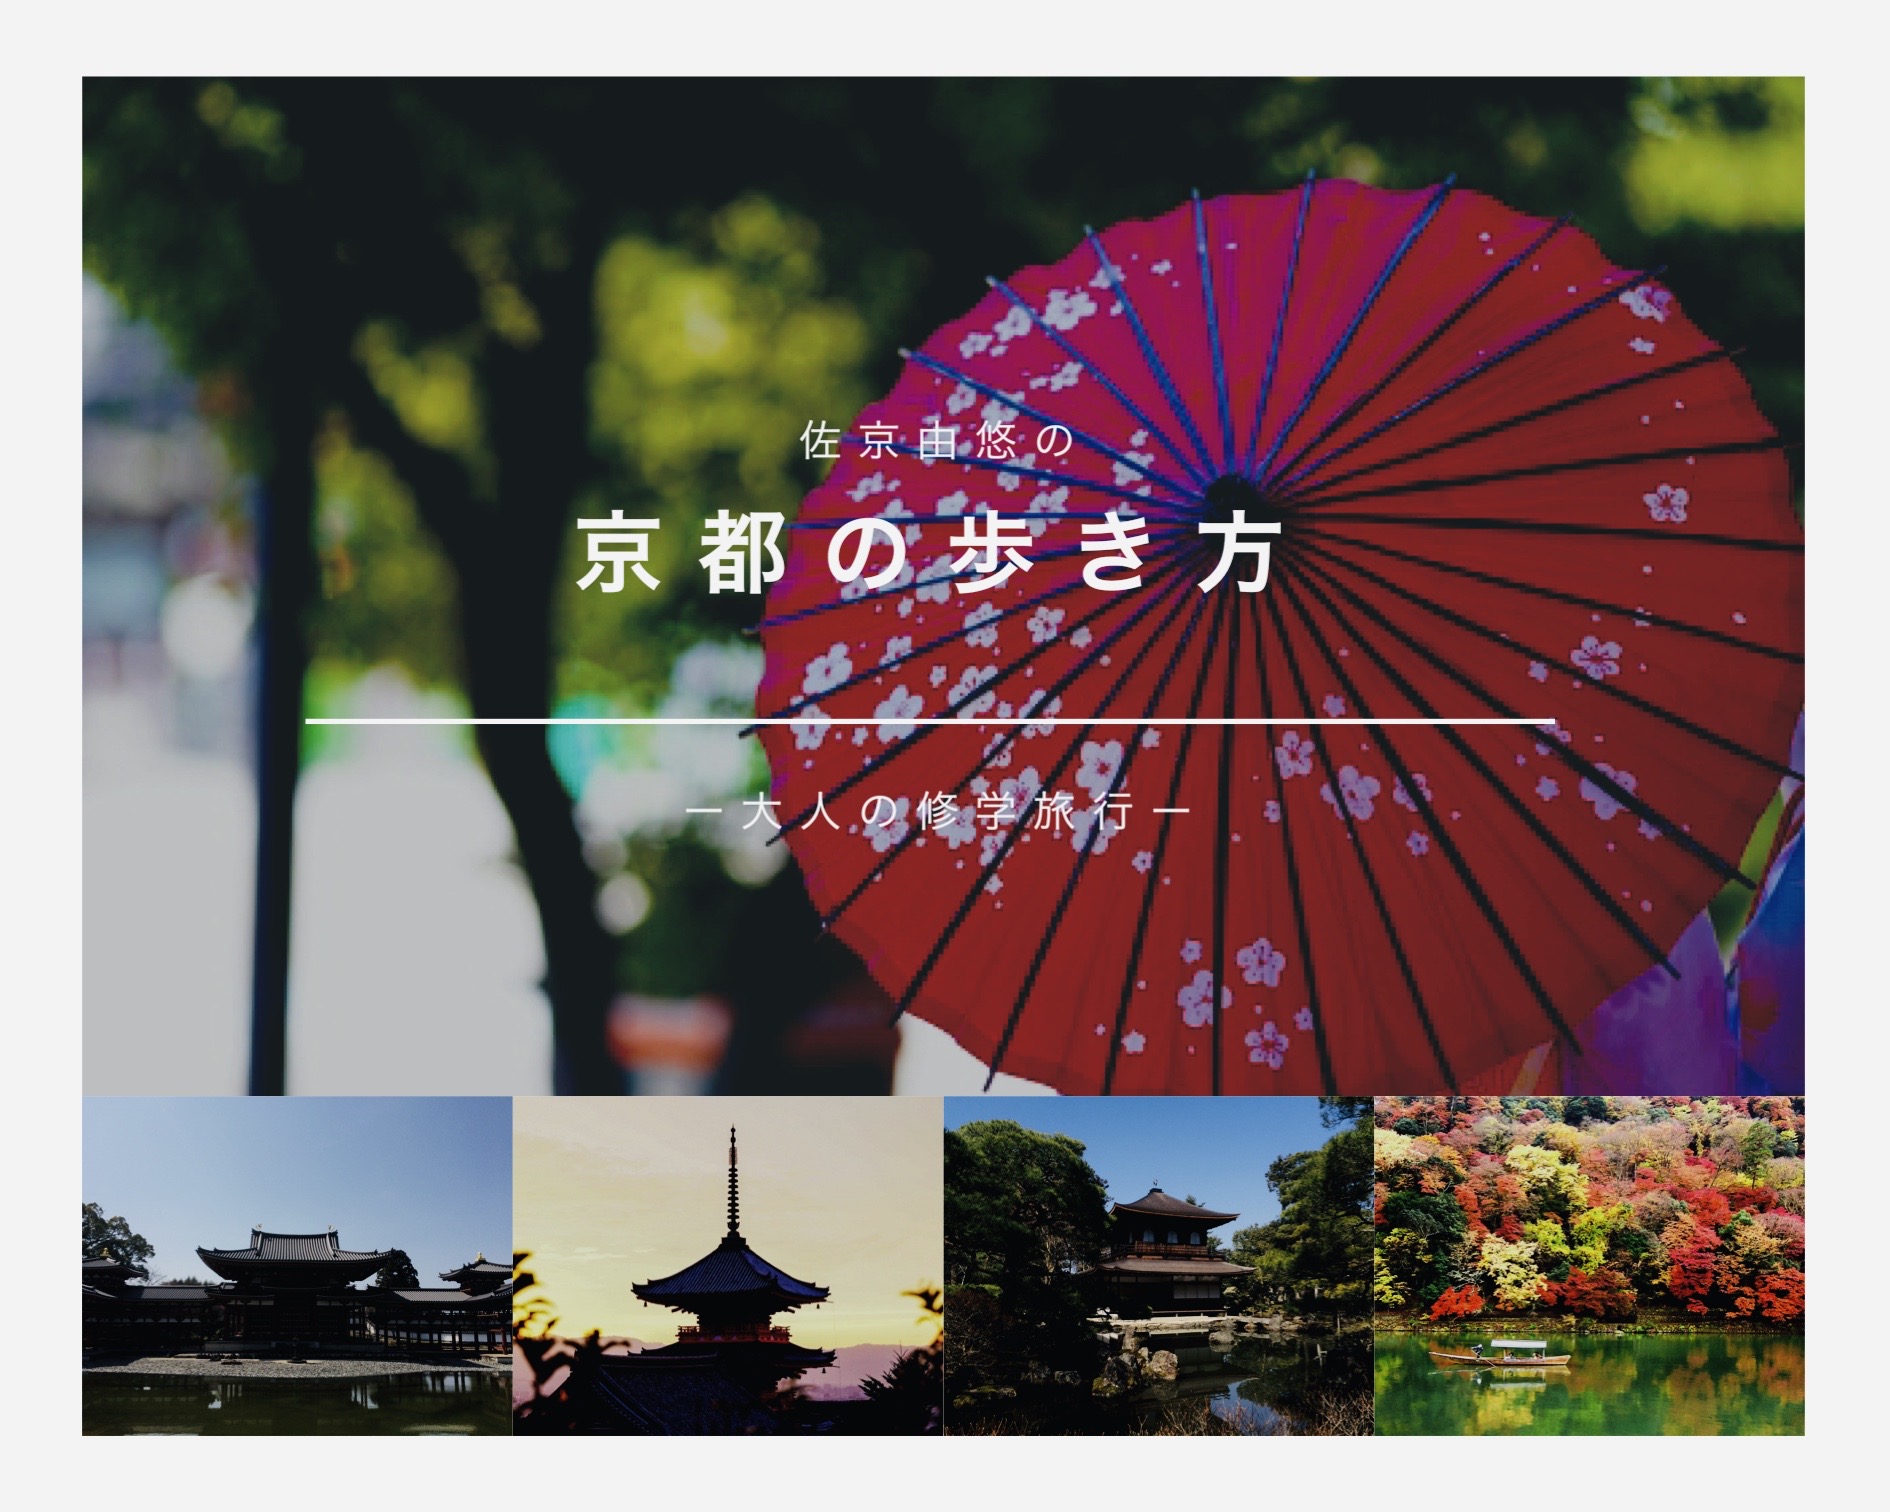 清水寺――あまりにも有名な京都観光のド定番【佐京由悠の京都の歩き方】